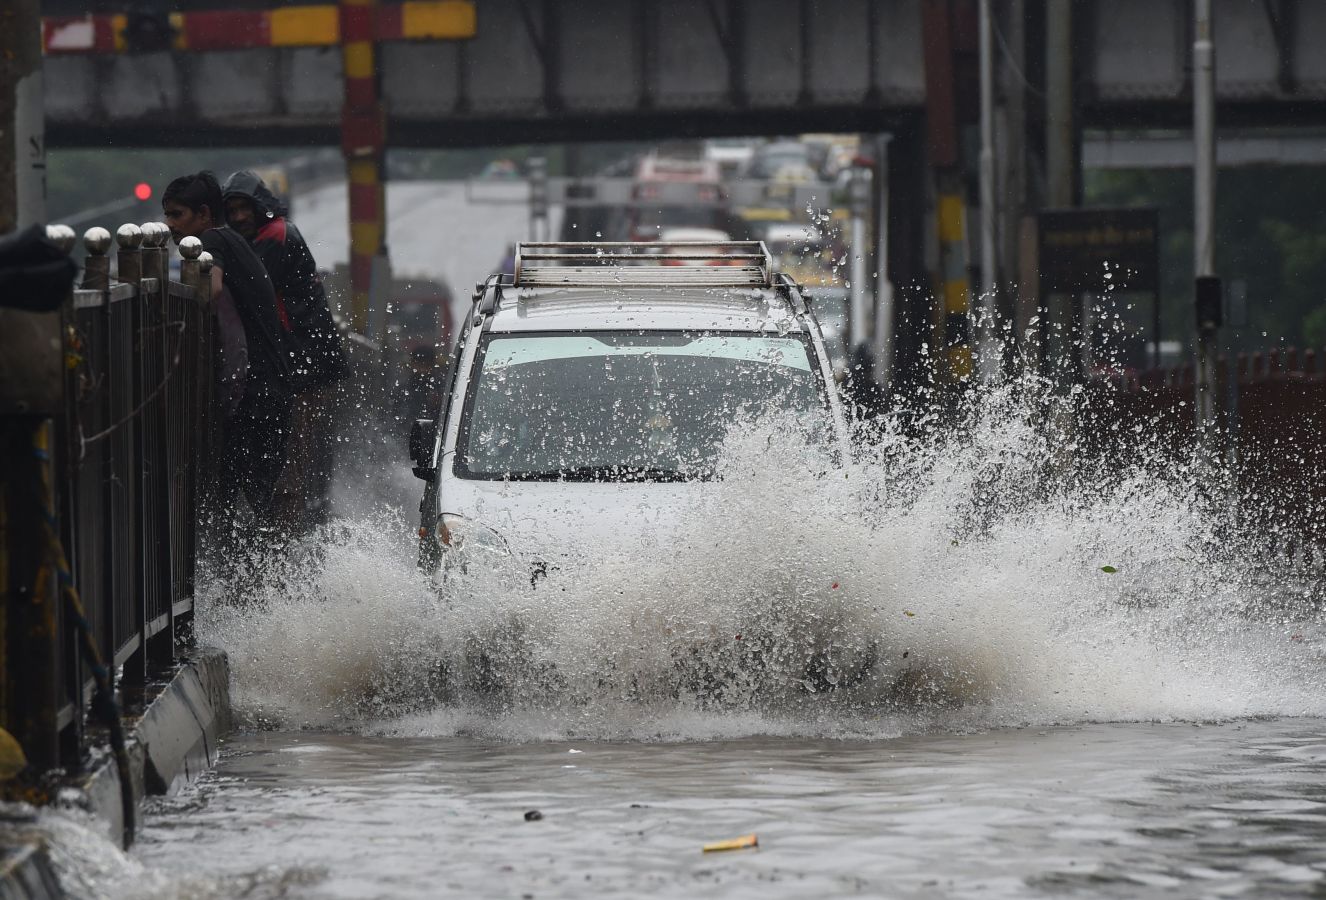 La India vive su época de monzón. En unos minutos, las calle de Bombay se inundaron como consecuencia de una fuerte tromba de agua